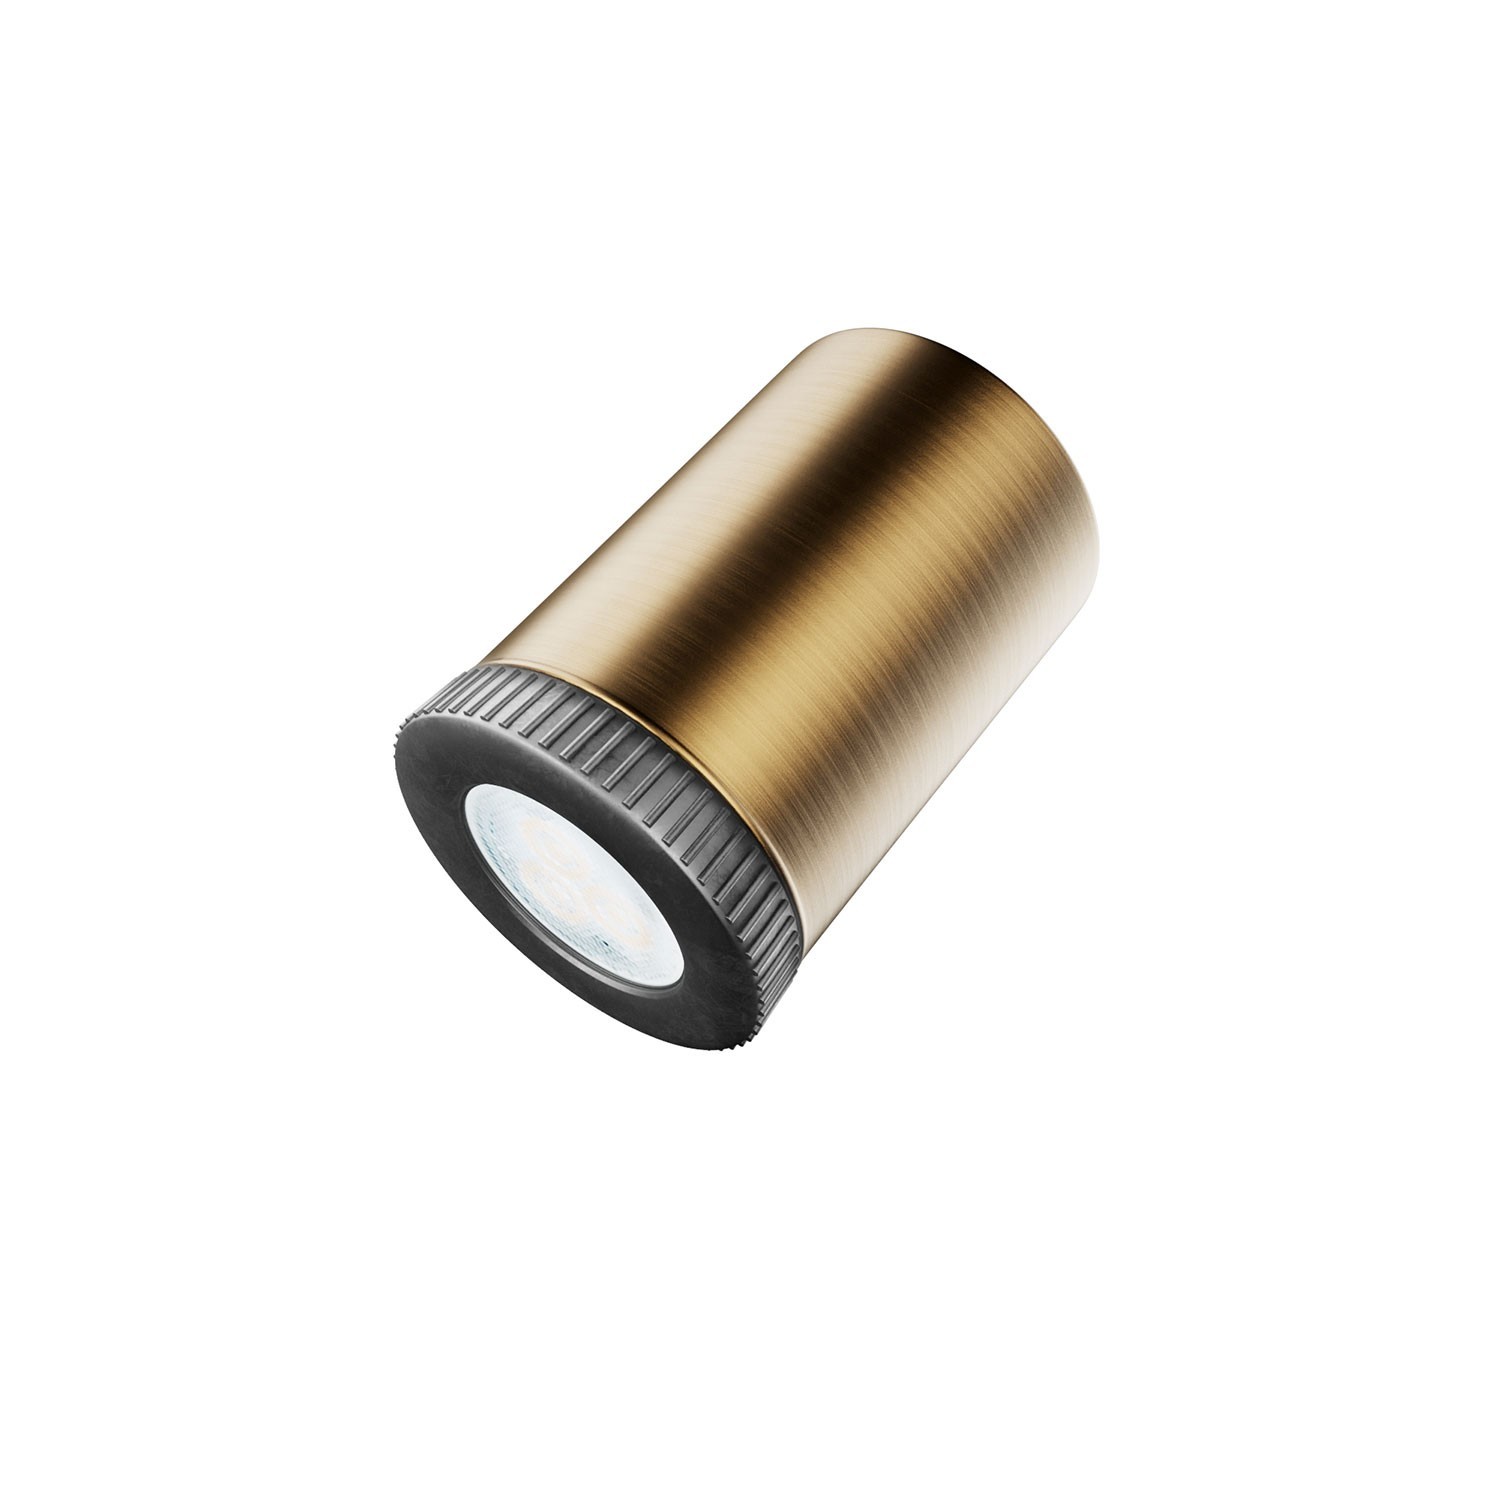 Fermaluce faretto Mini Spotlight GU1d0, lampada orientabile da parete o soffitto con snodo